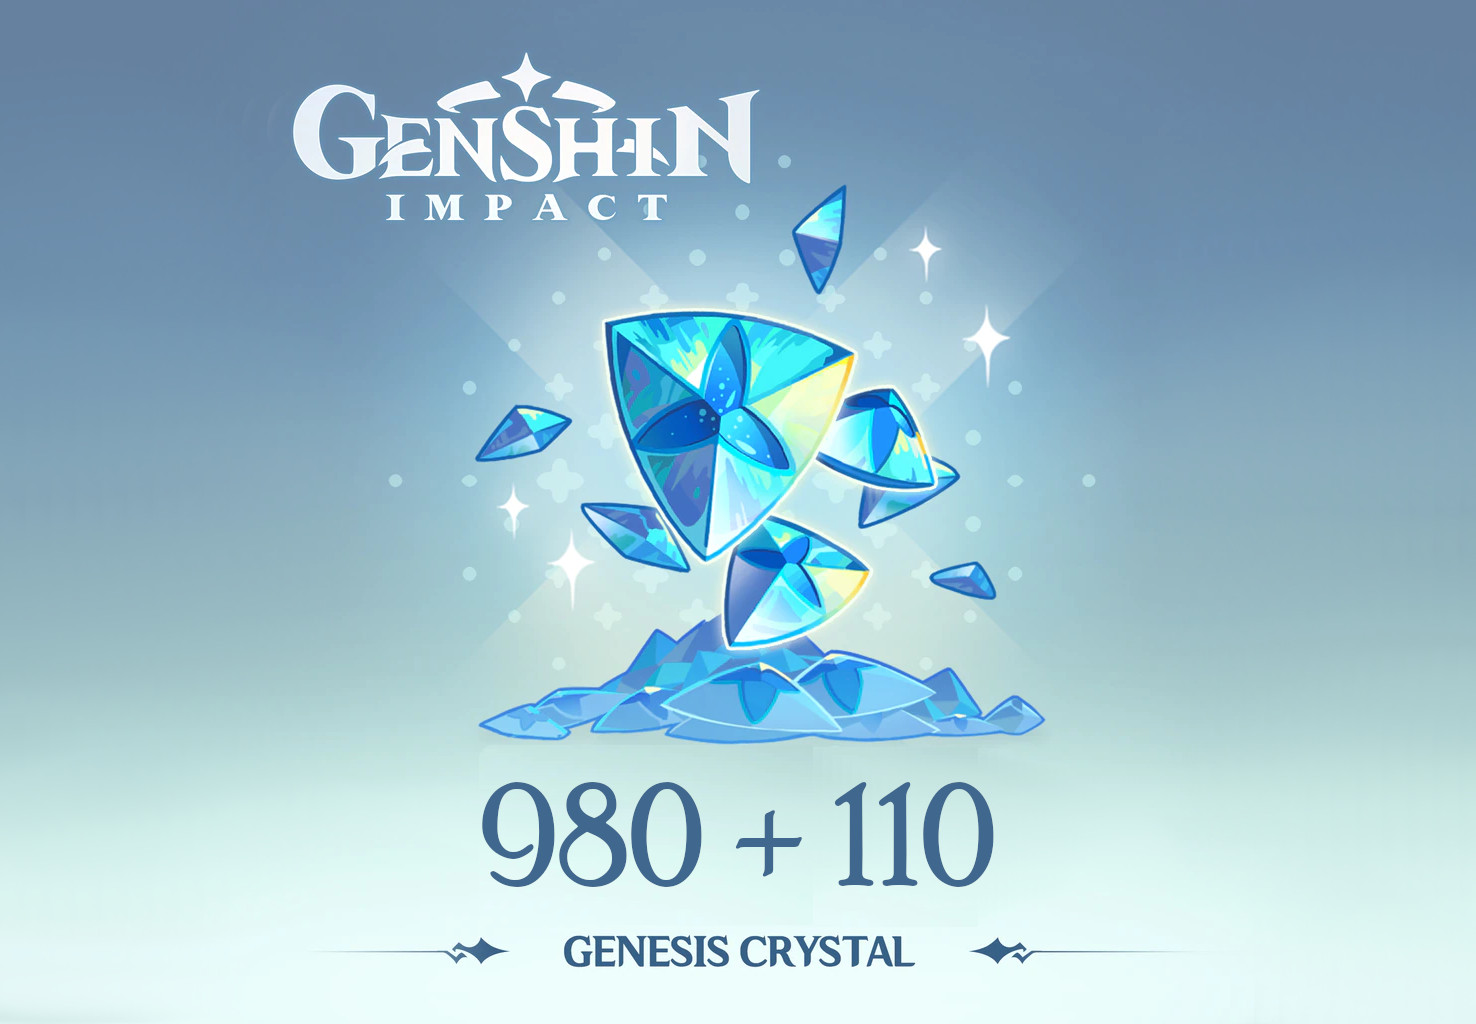 (17.23$) Genshin Impact - 980 + 110 Genesis Crystals Reidos Voucher